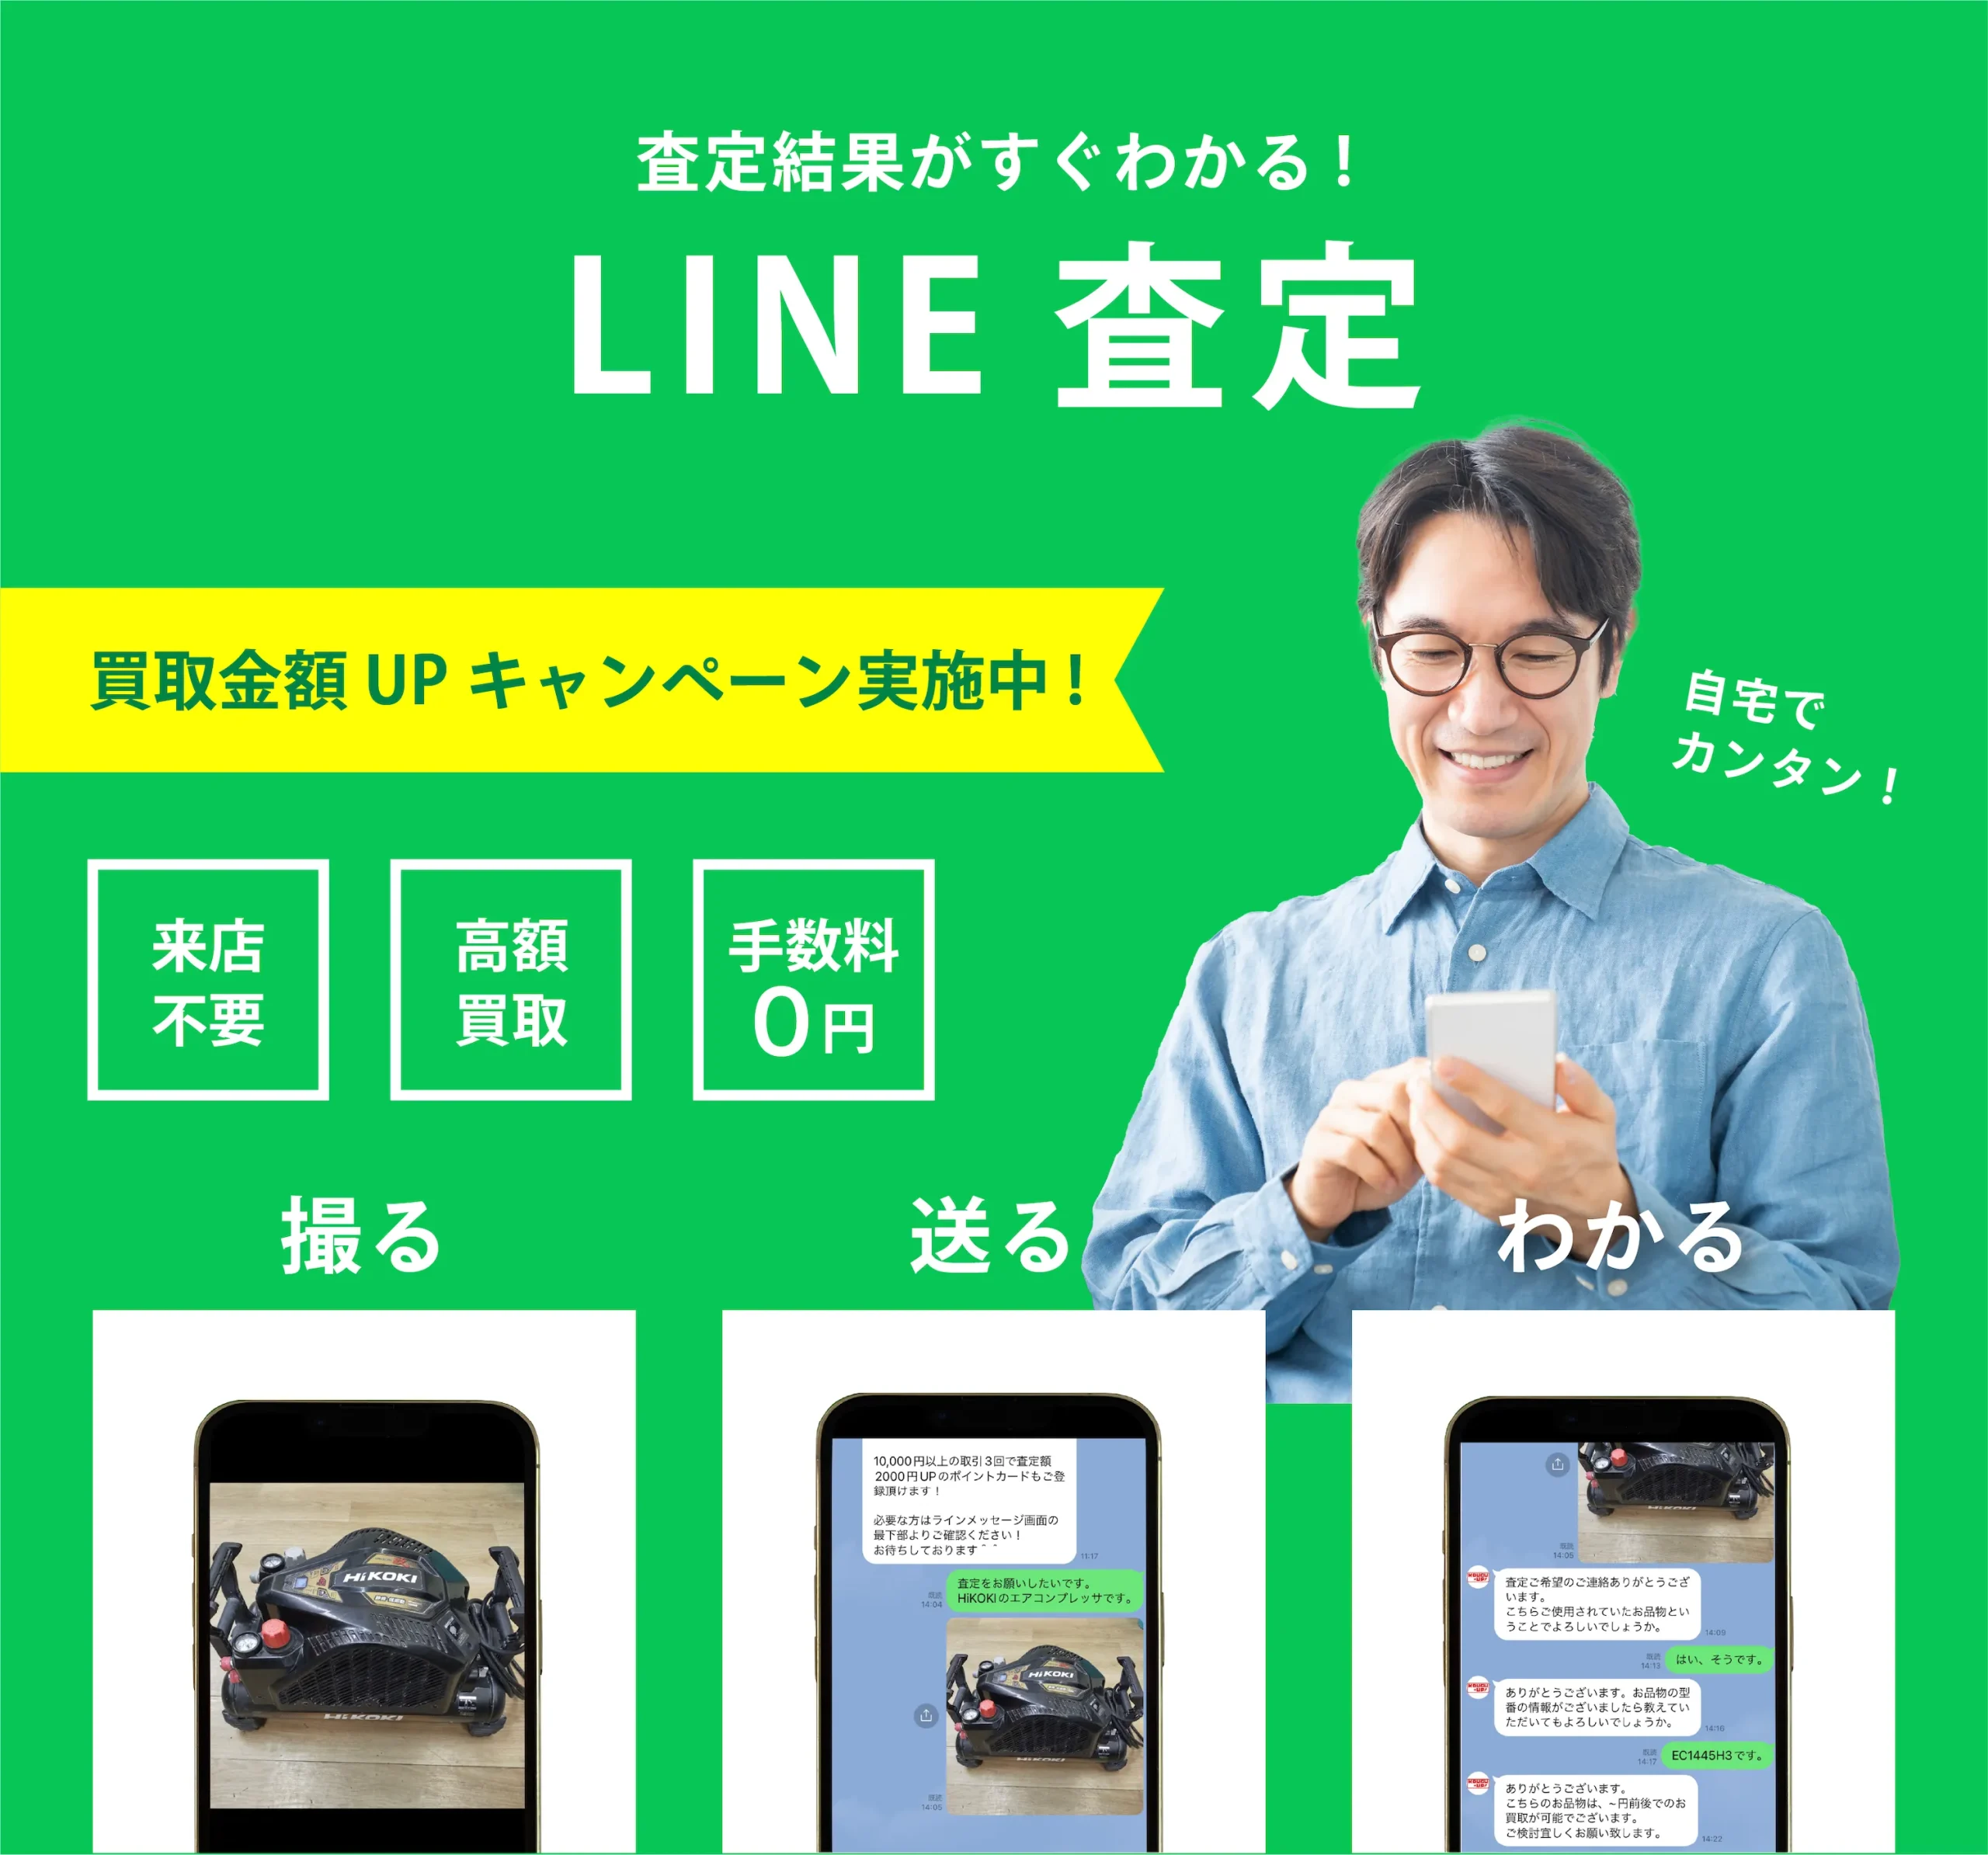 line_satei_main_sp